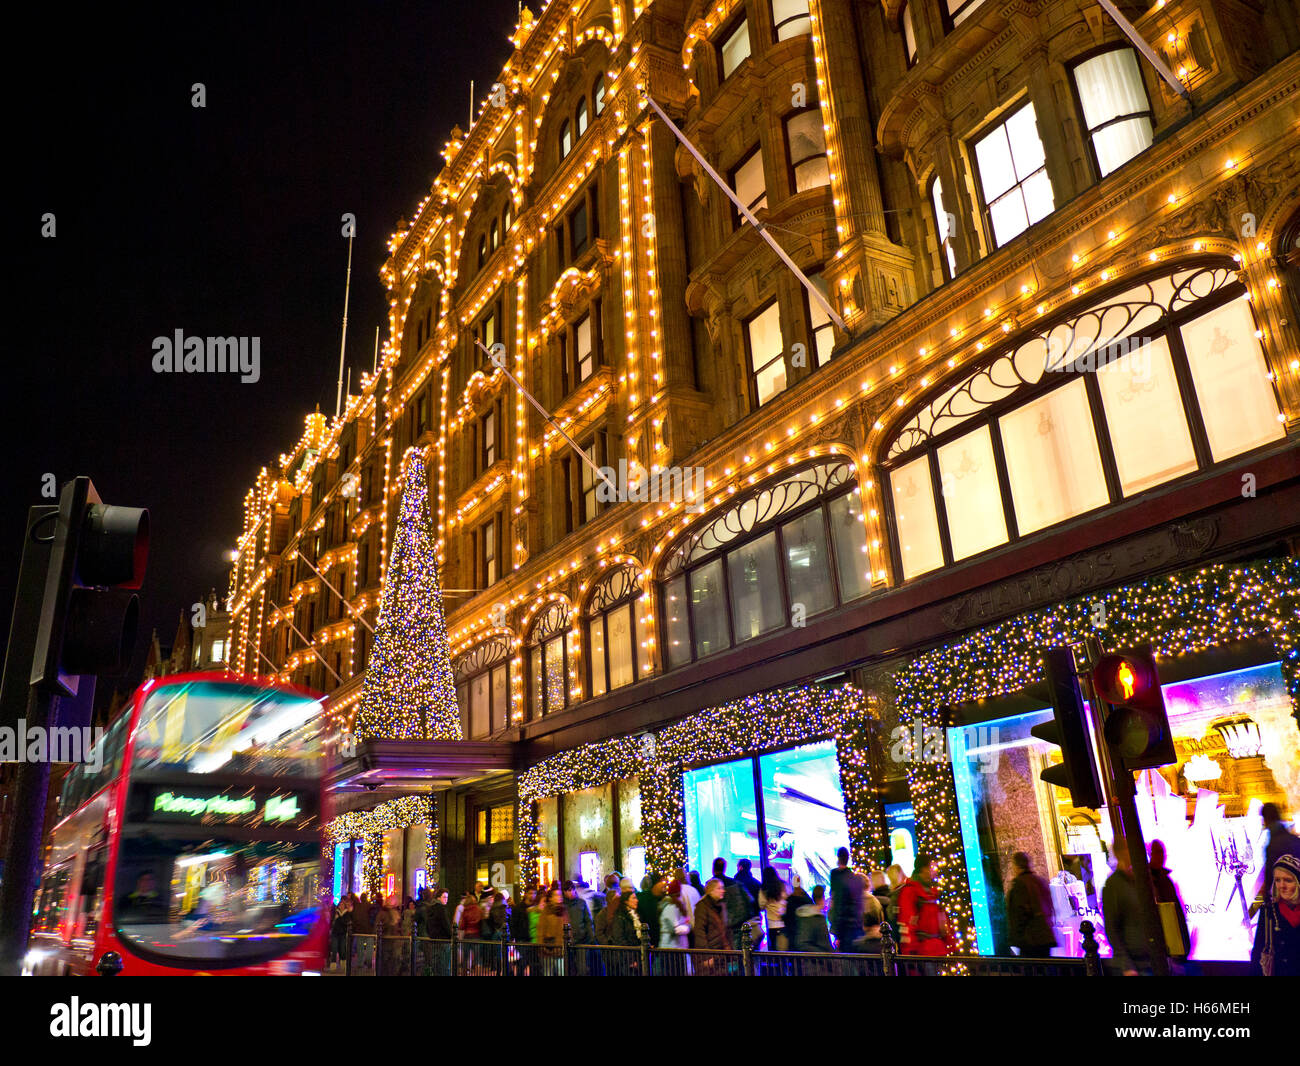 Weihnachten LONDON SHOPPING Einkaufen Kaufhaus Harrods in der Dämmerung mit Weihnachtsbeleuchtung Menschenmengen und vorbei an roten Bus Knightsbridge London SW1 Stockfoto